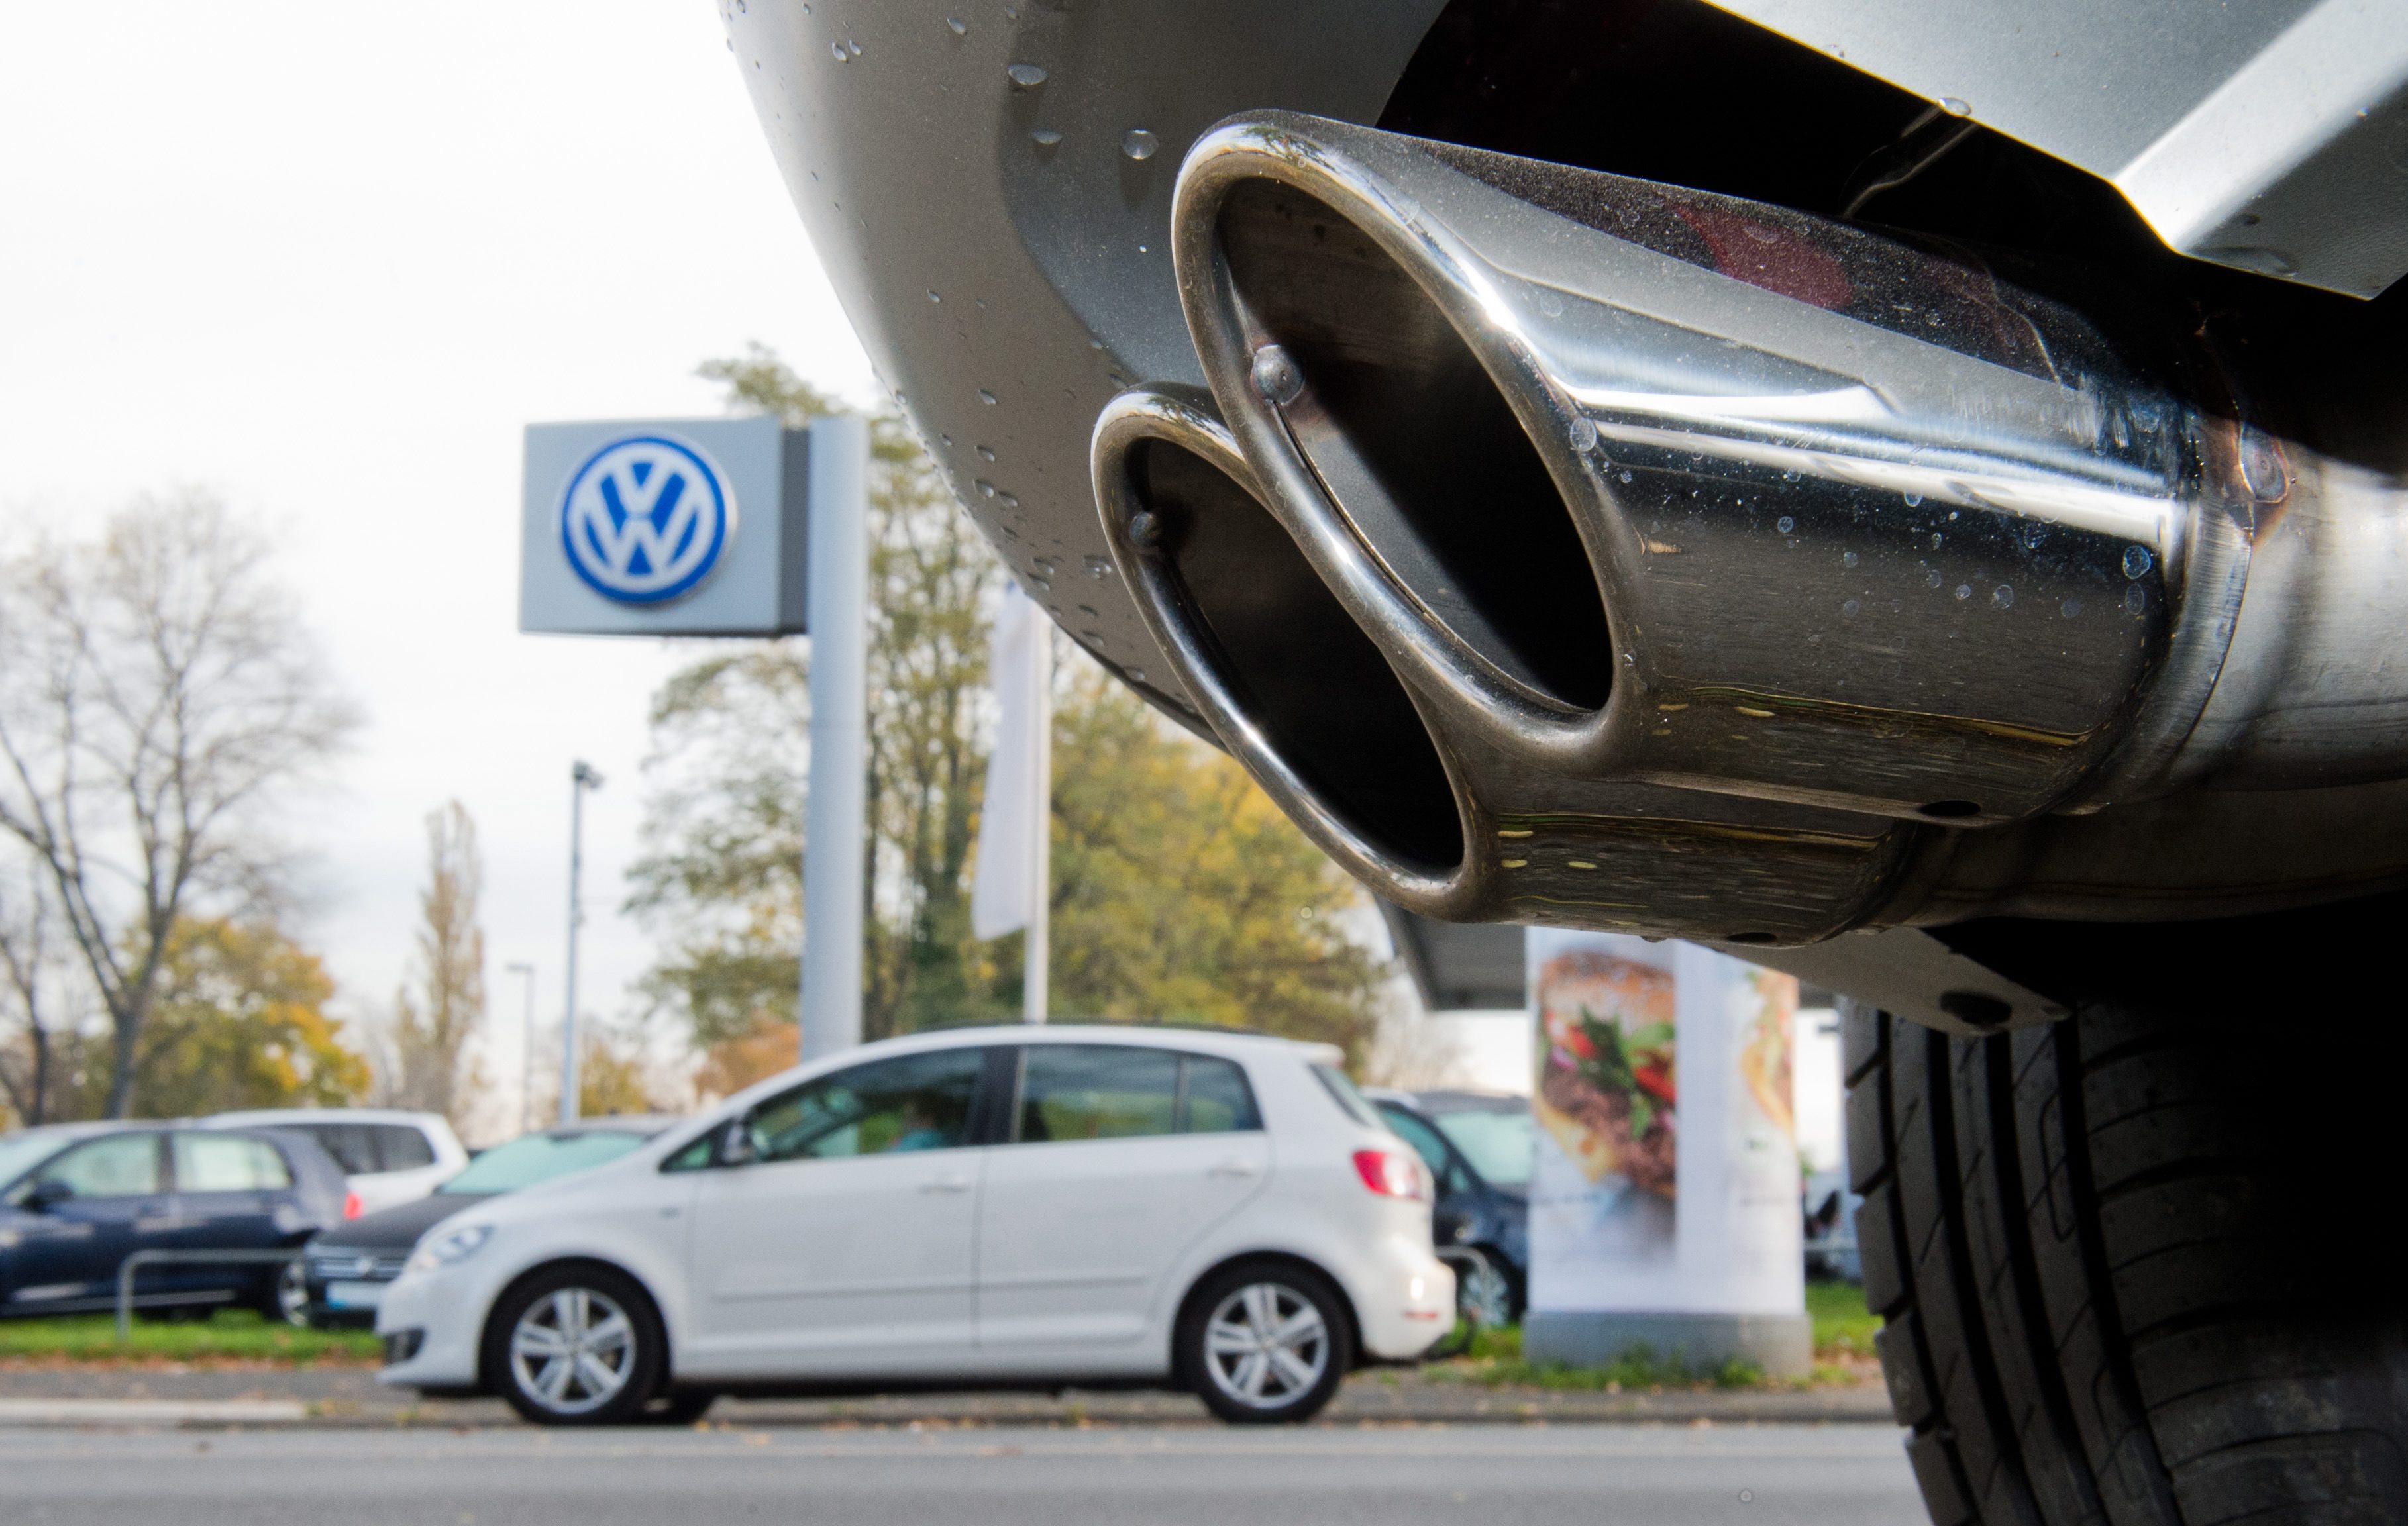 Investeerders in Volkswagen hebben gezamenlijk voor 8,2 miljard euro aan claims ingediend vanwege schade door het dieselschandaal bij het Duitse autoconcern. Volgens de rechtbank in Braunschweig gaat het om circa 1400 rechtszaken die zijn aangespannen tegen Volkswagen.